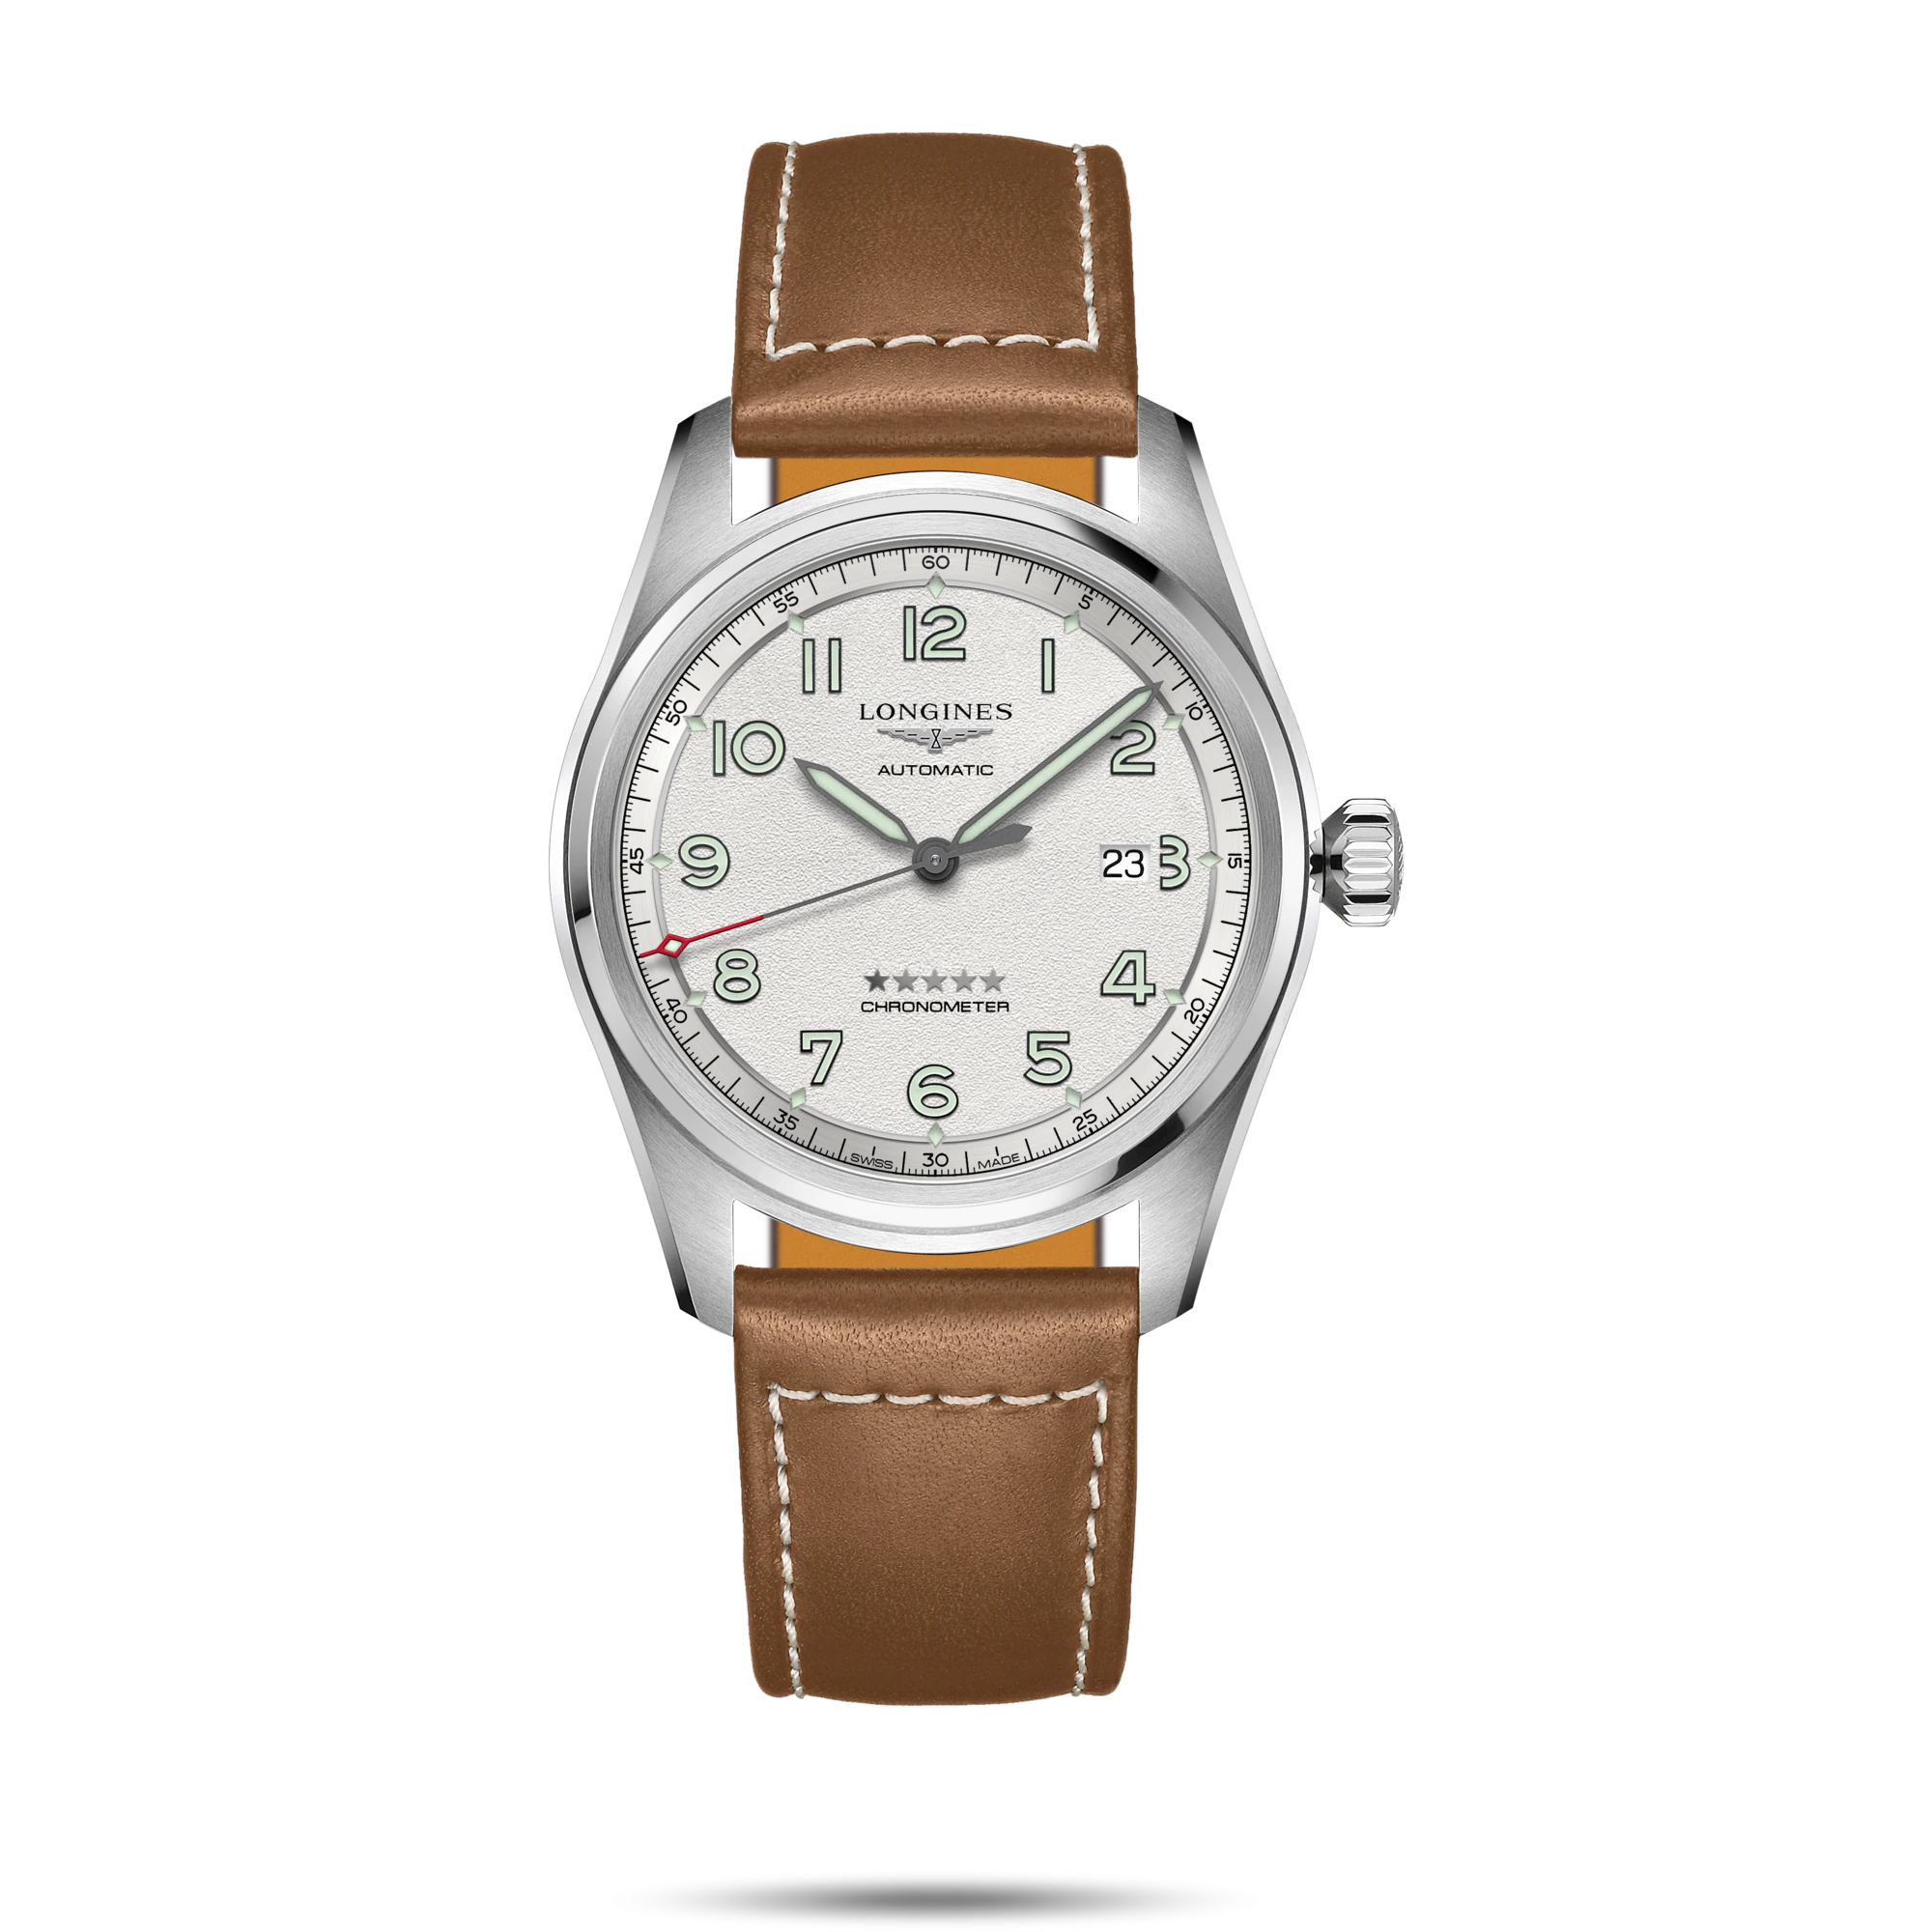 ساعت لونژین مدل L3.810.4.73.2